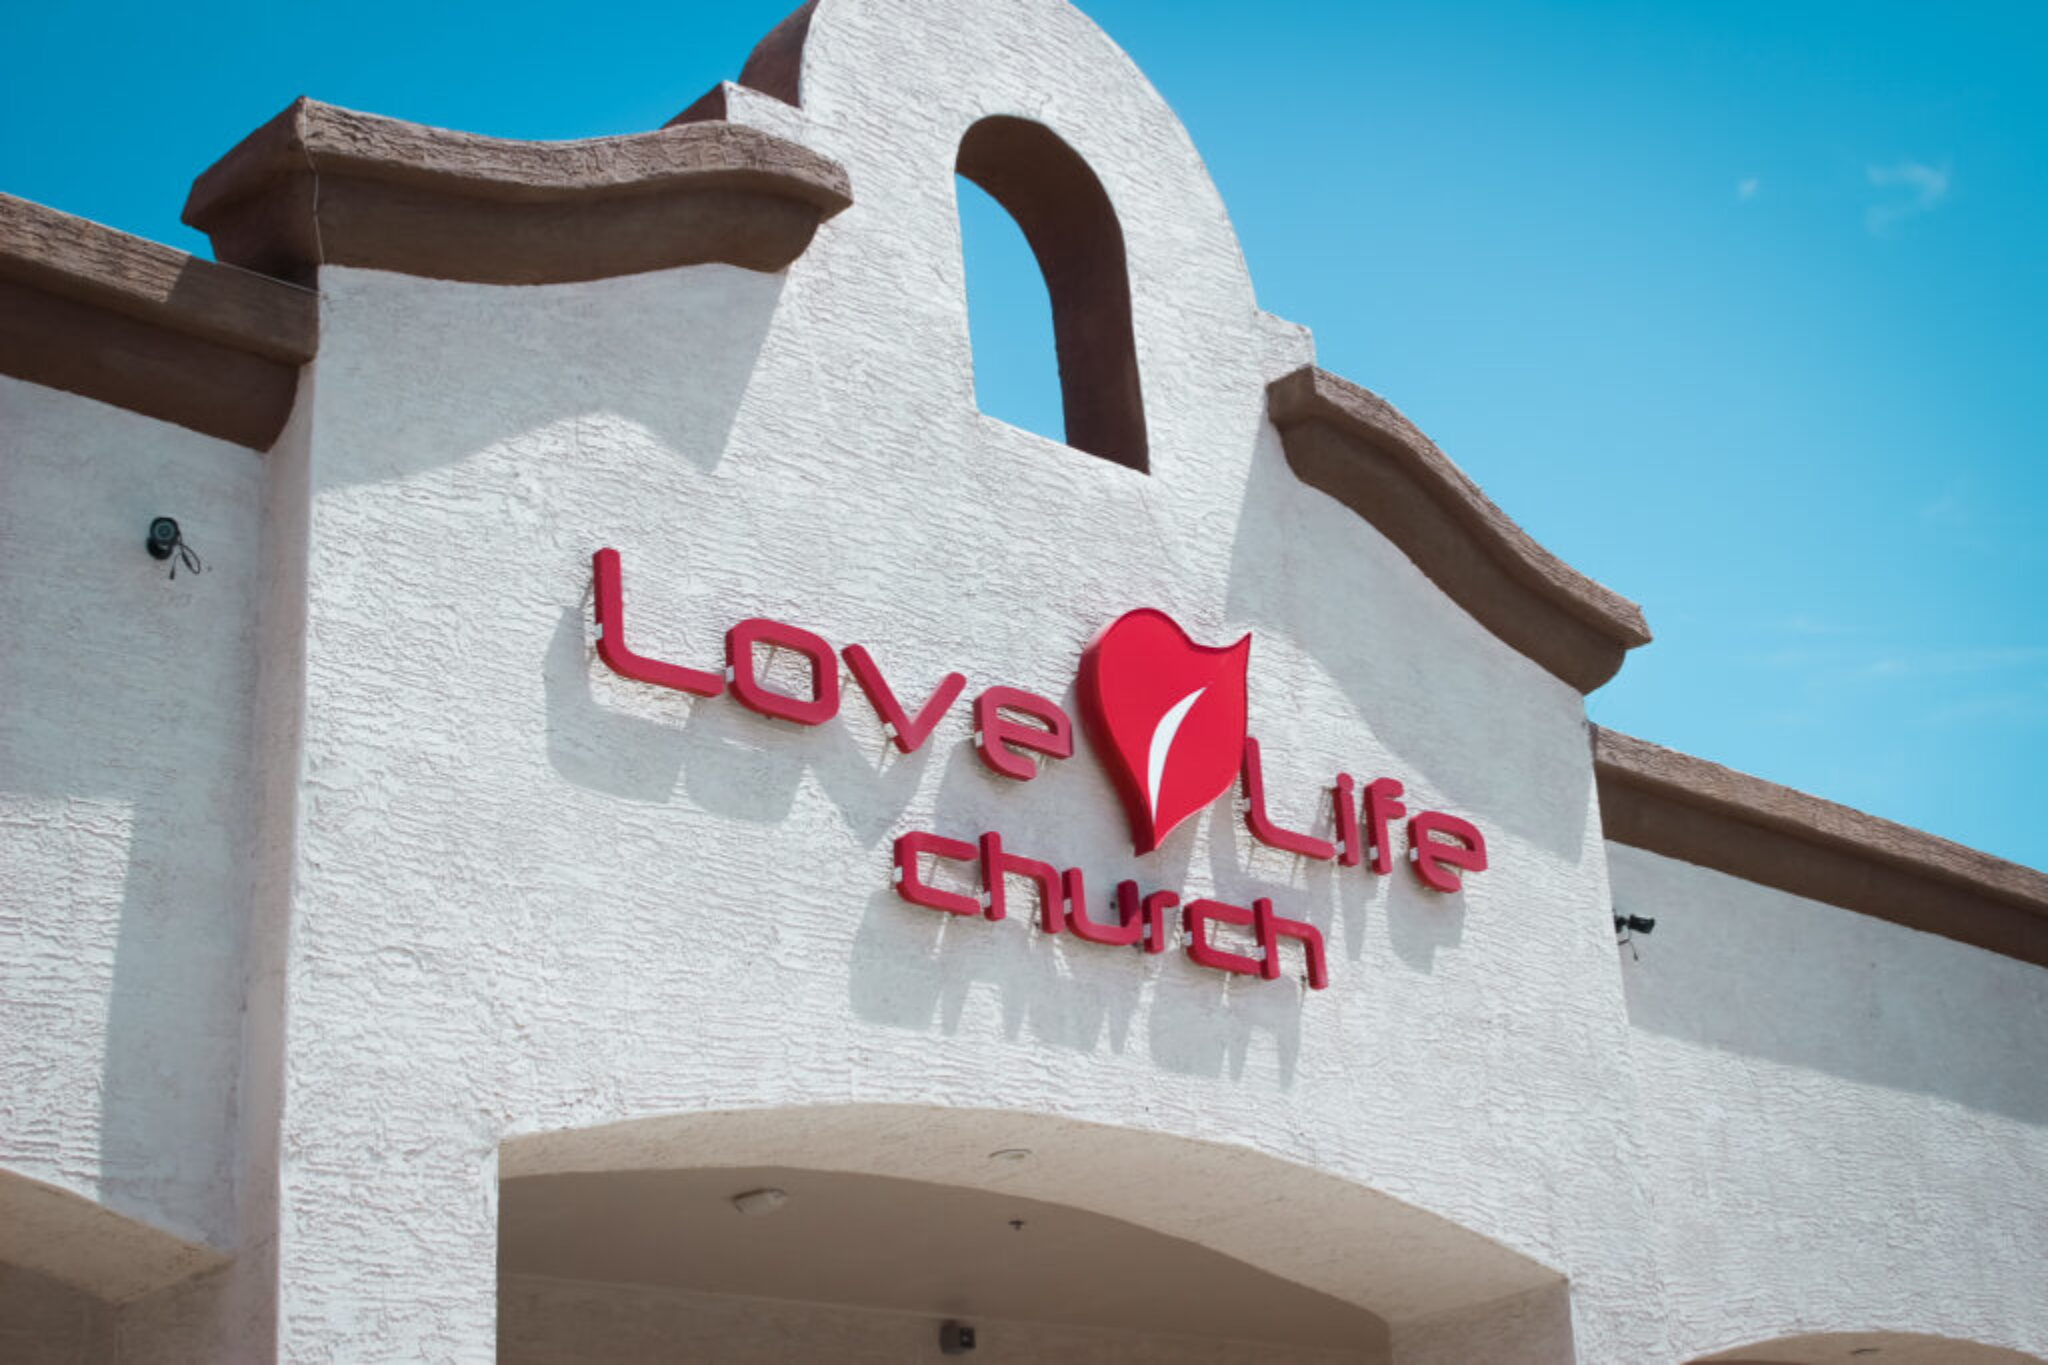 Love Life Church